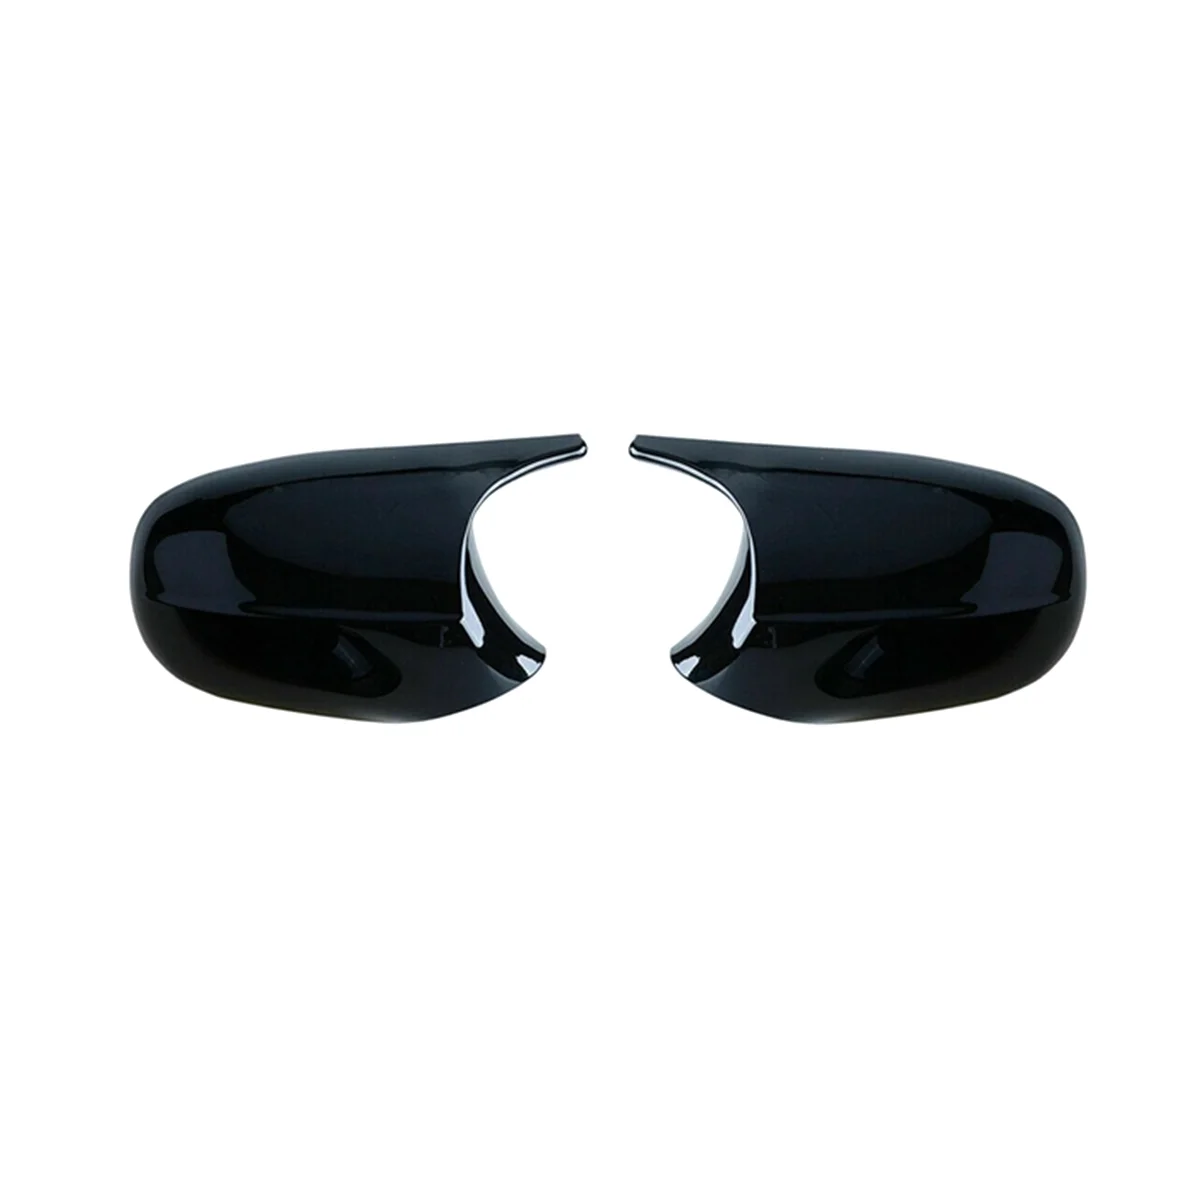 Araba Parlak Siyah dikiz aynası Kapağı Yan Ayna Kılıfı Trim için BMW 3 Serisi E90 E91 E92 E93 2008-2013 5116720520